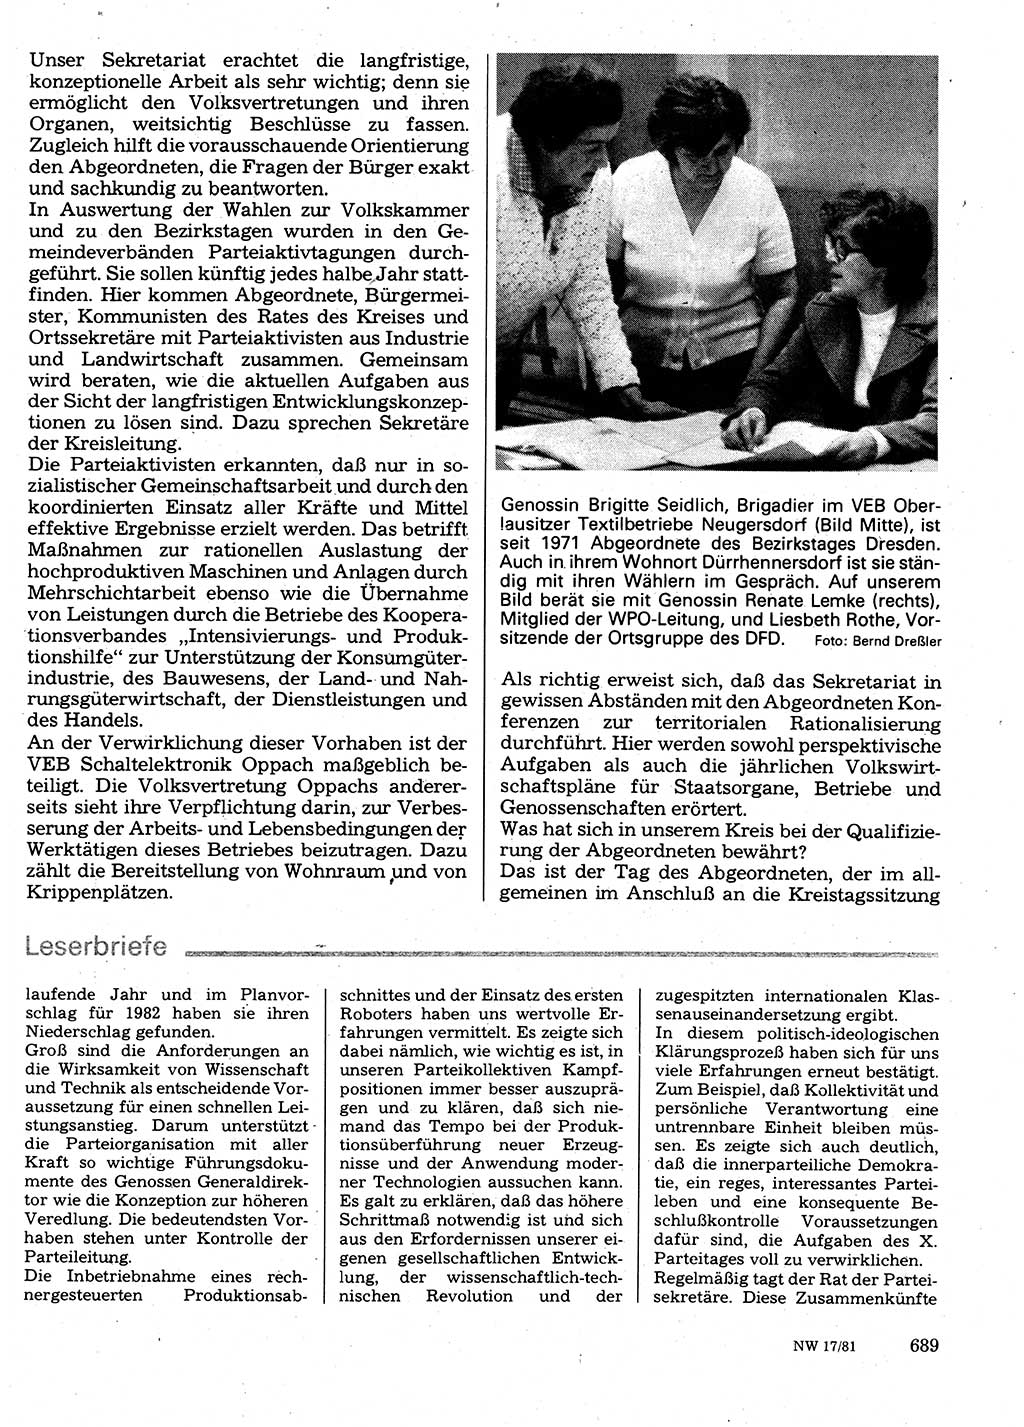 Neuer Weg (NW), Organ des Zentralkomitees (ZK) der SED (Sozialistische Einheitspartei Deutschlands) für Fragen des Parteilebens, 36. Jahrgang [Deutsche Demokratische Republik (DDR)] 1981, Seite 689 (NW ZK SED DDR 1981, S. 689)